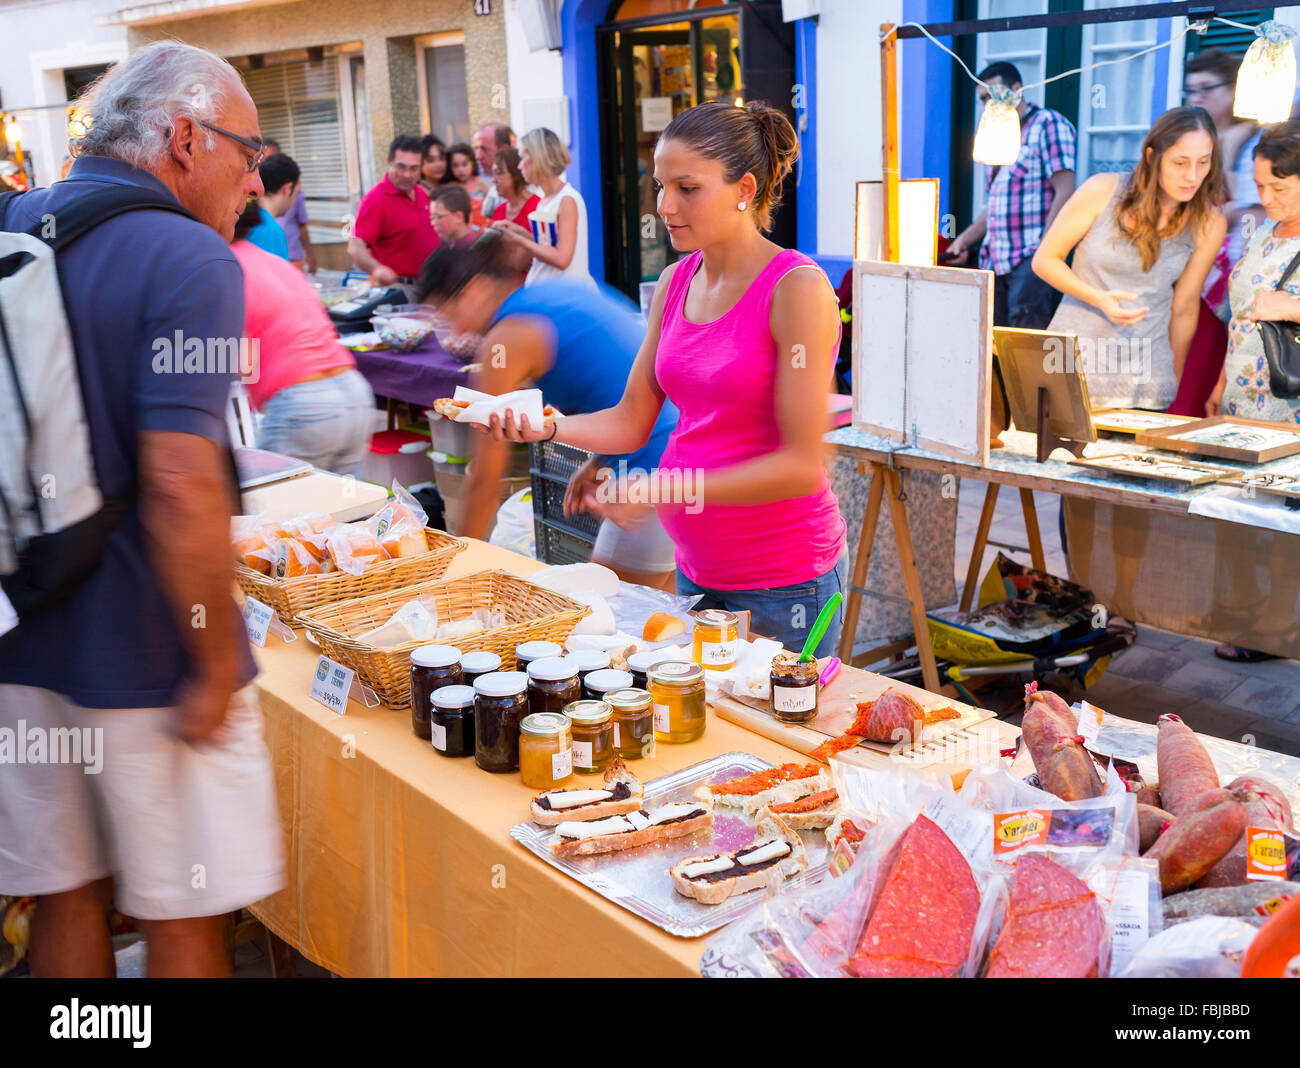 Mercato settimanale in Es Mercadal, centro dell'isola Menorca, isole Baleari, Spagna, Europa meridionale Foto Stock